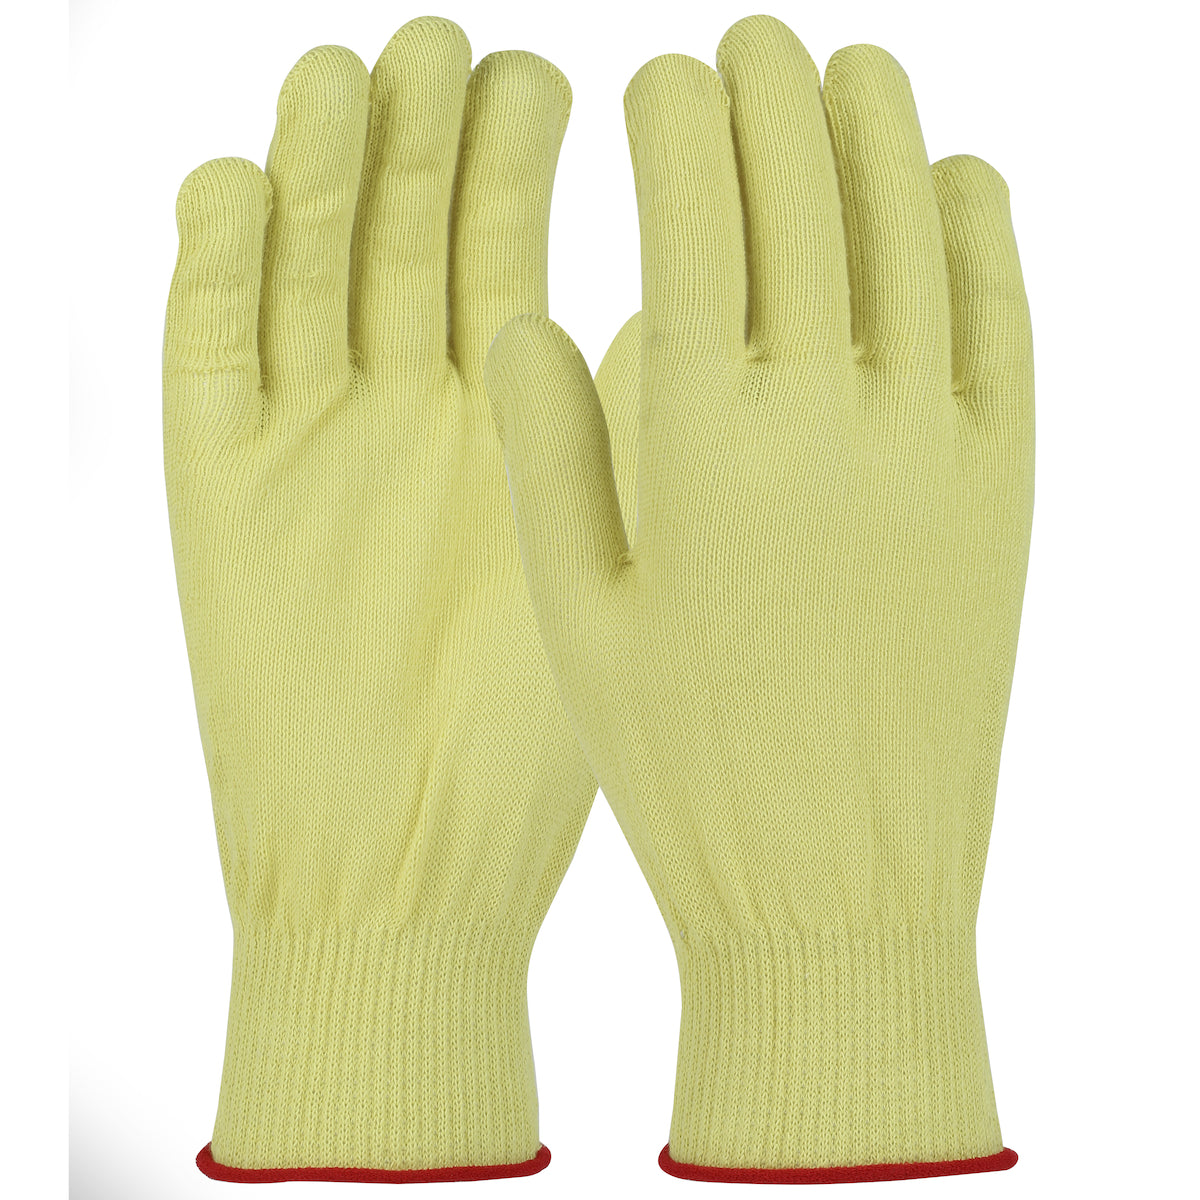 WPP MTW13-XL Seamless Knit Aramid Glove - Light Weight